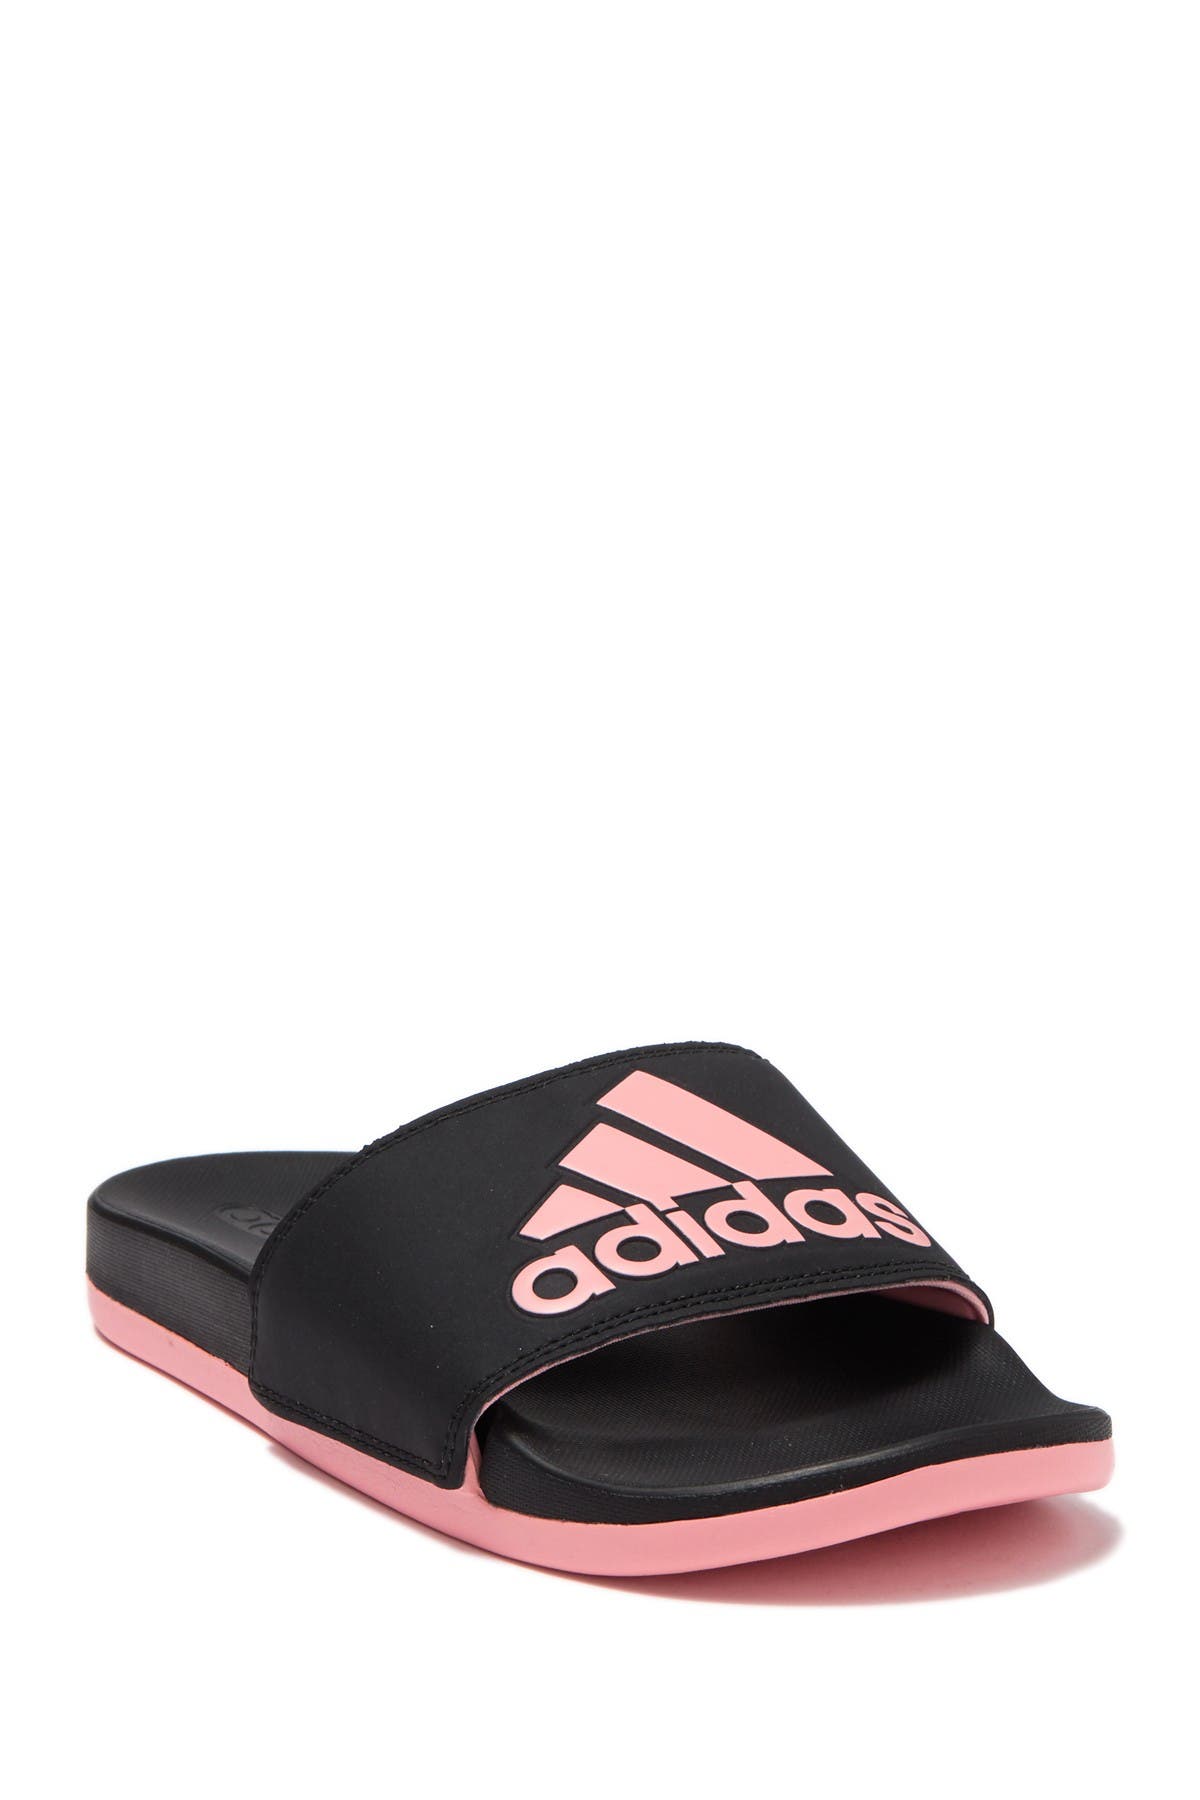 adilette slide sandal